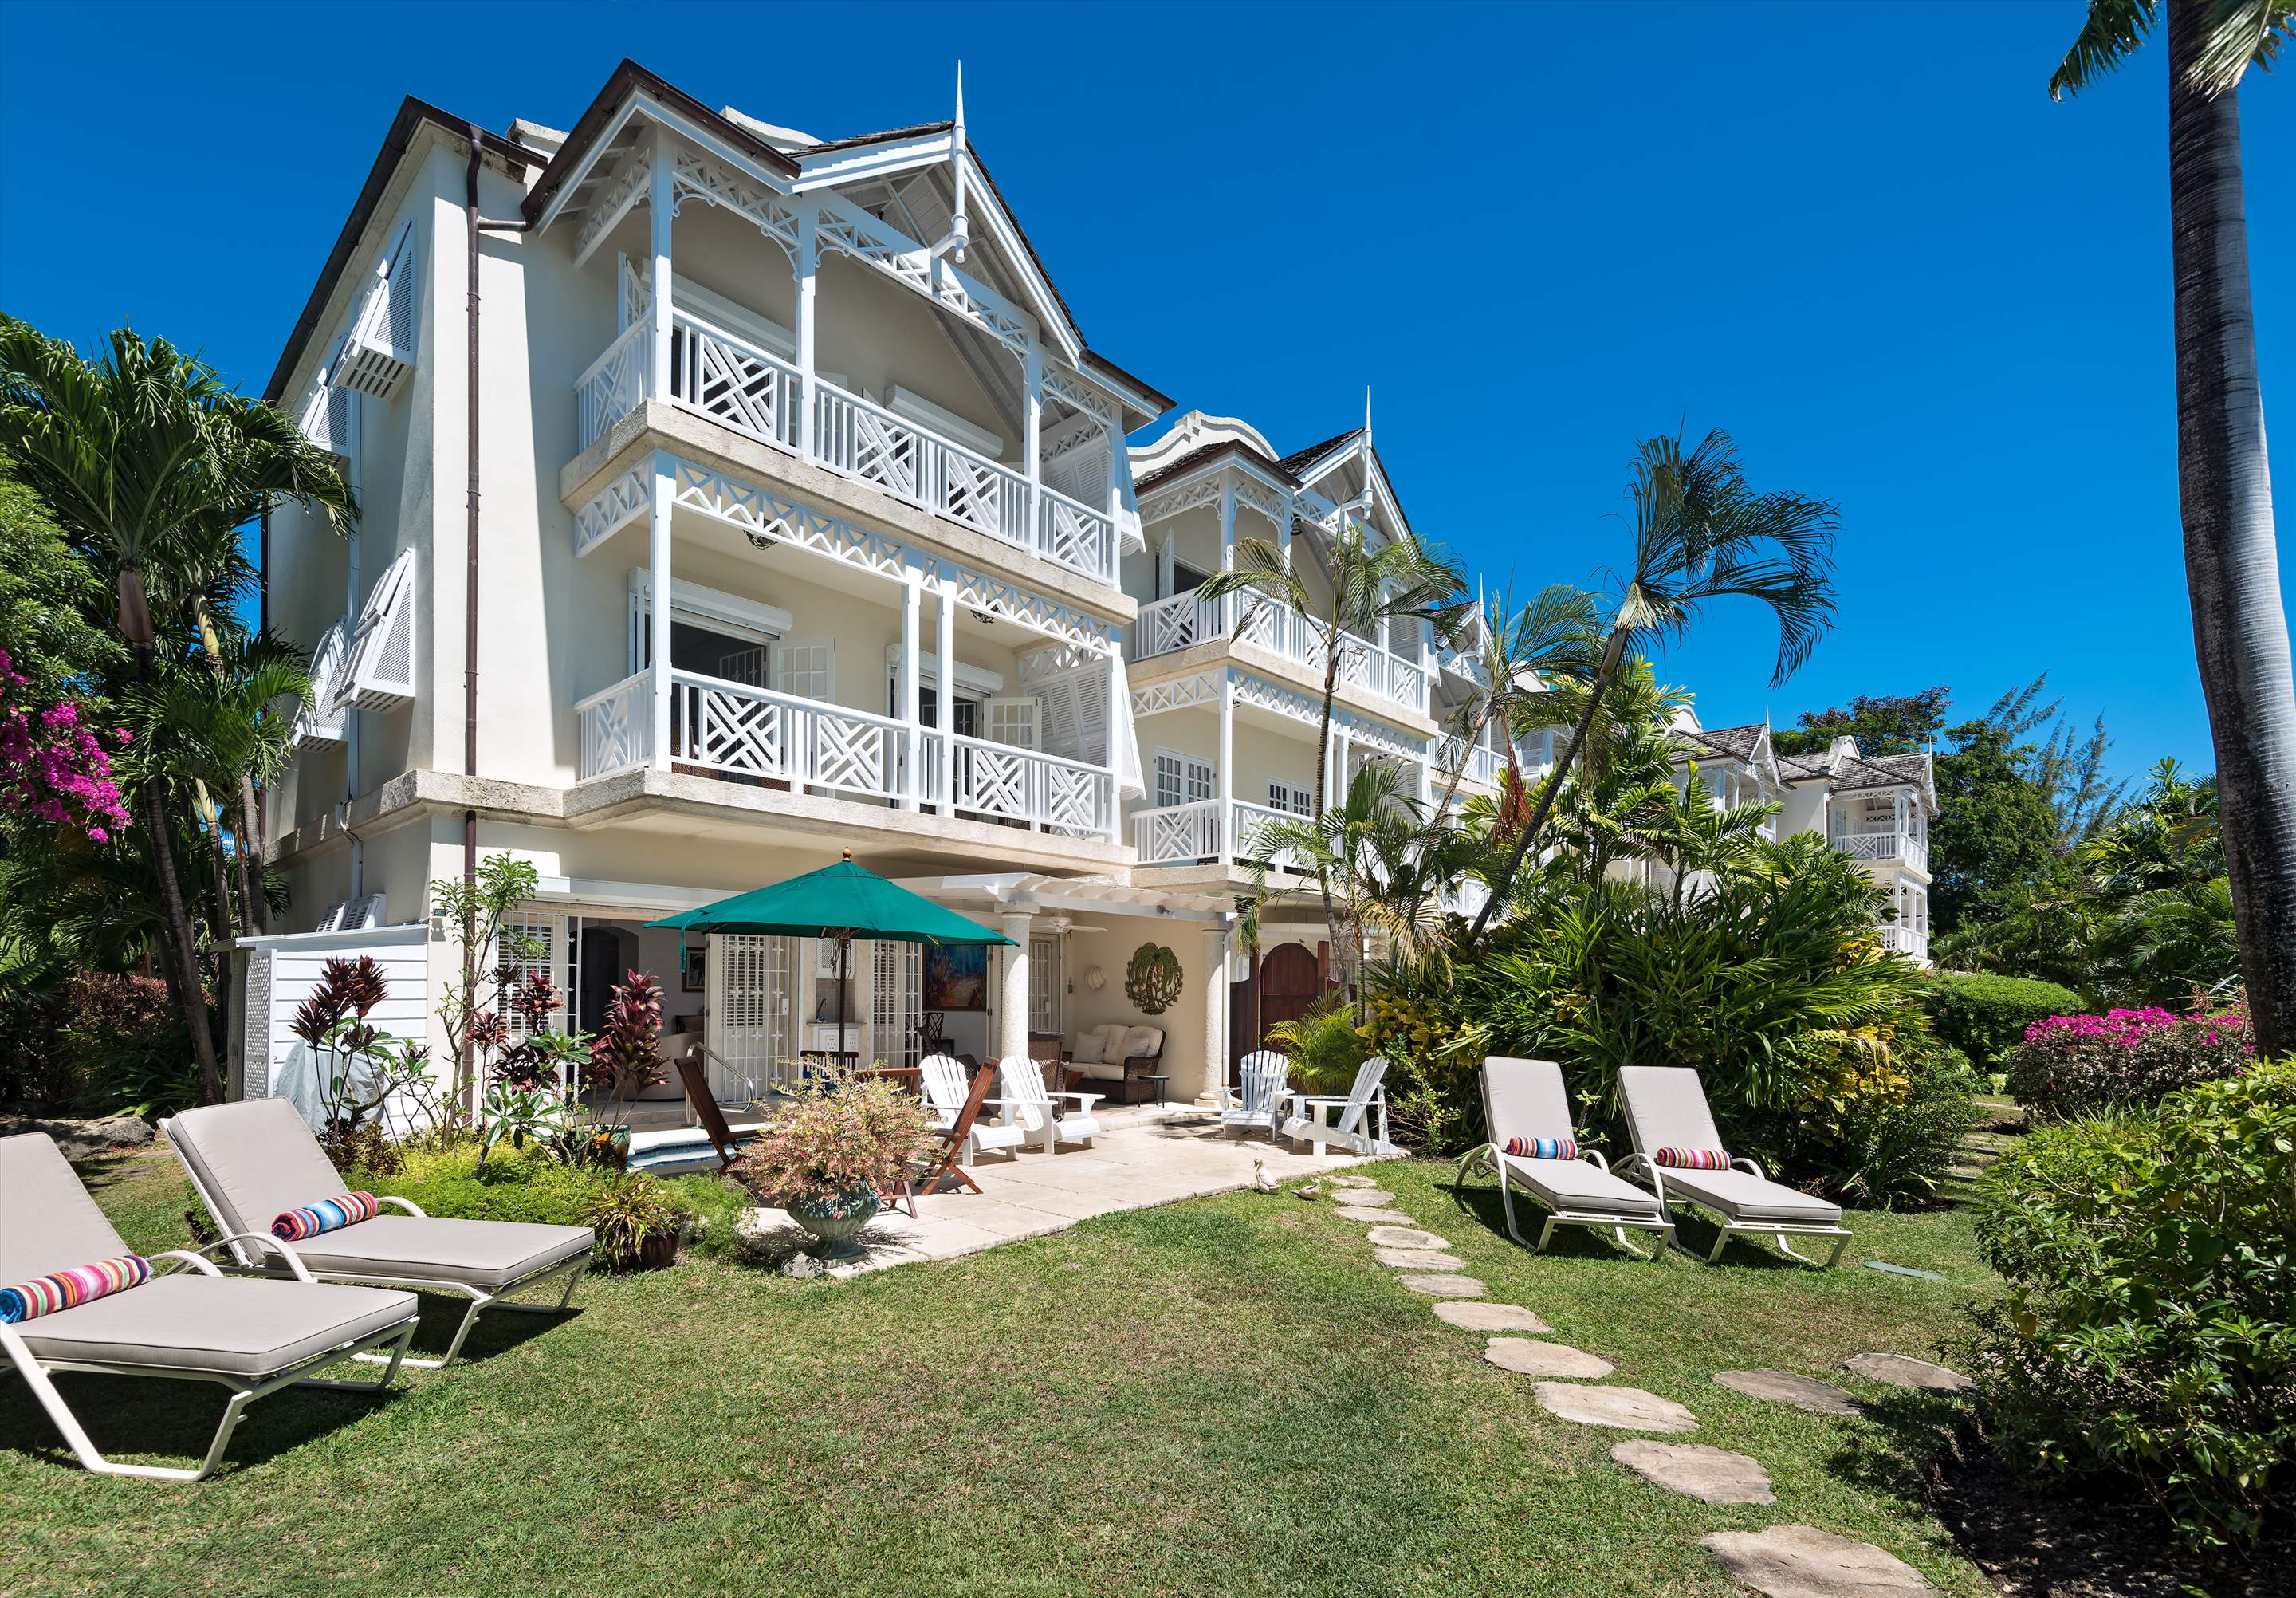 Fathom's End, 3 bedroom villa in St. James & West Coast, Barbados Photo #1